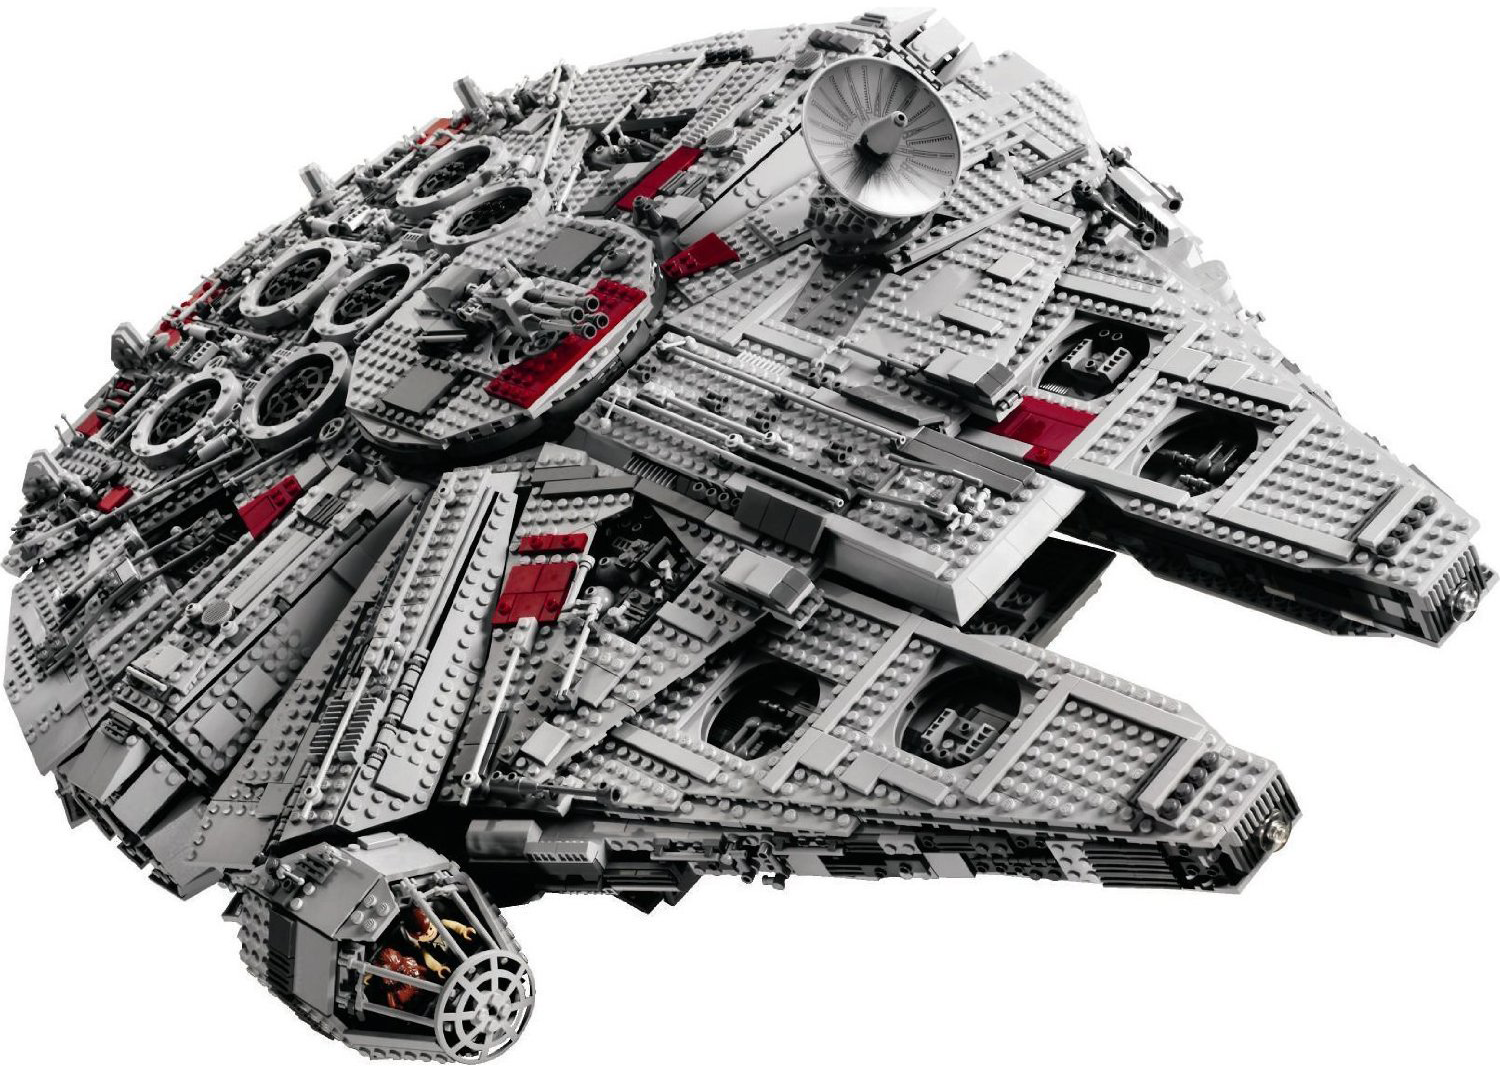 Comment assembler un Millennium Falcon en Lego